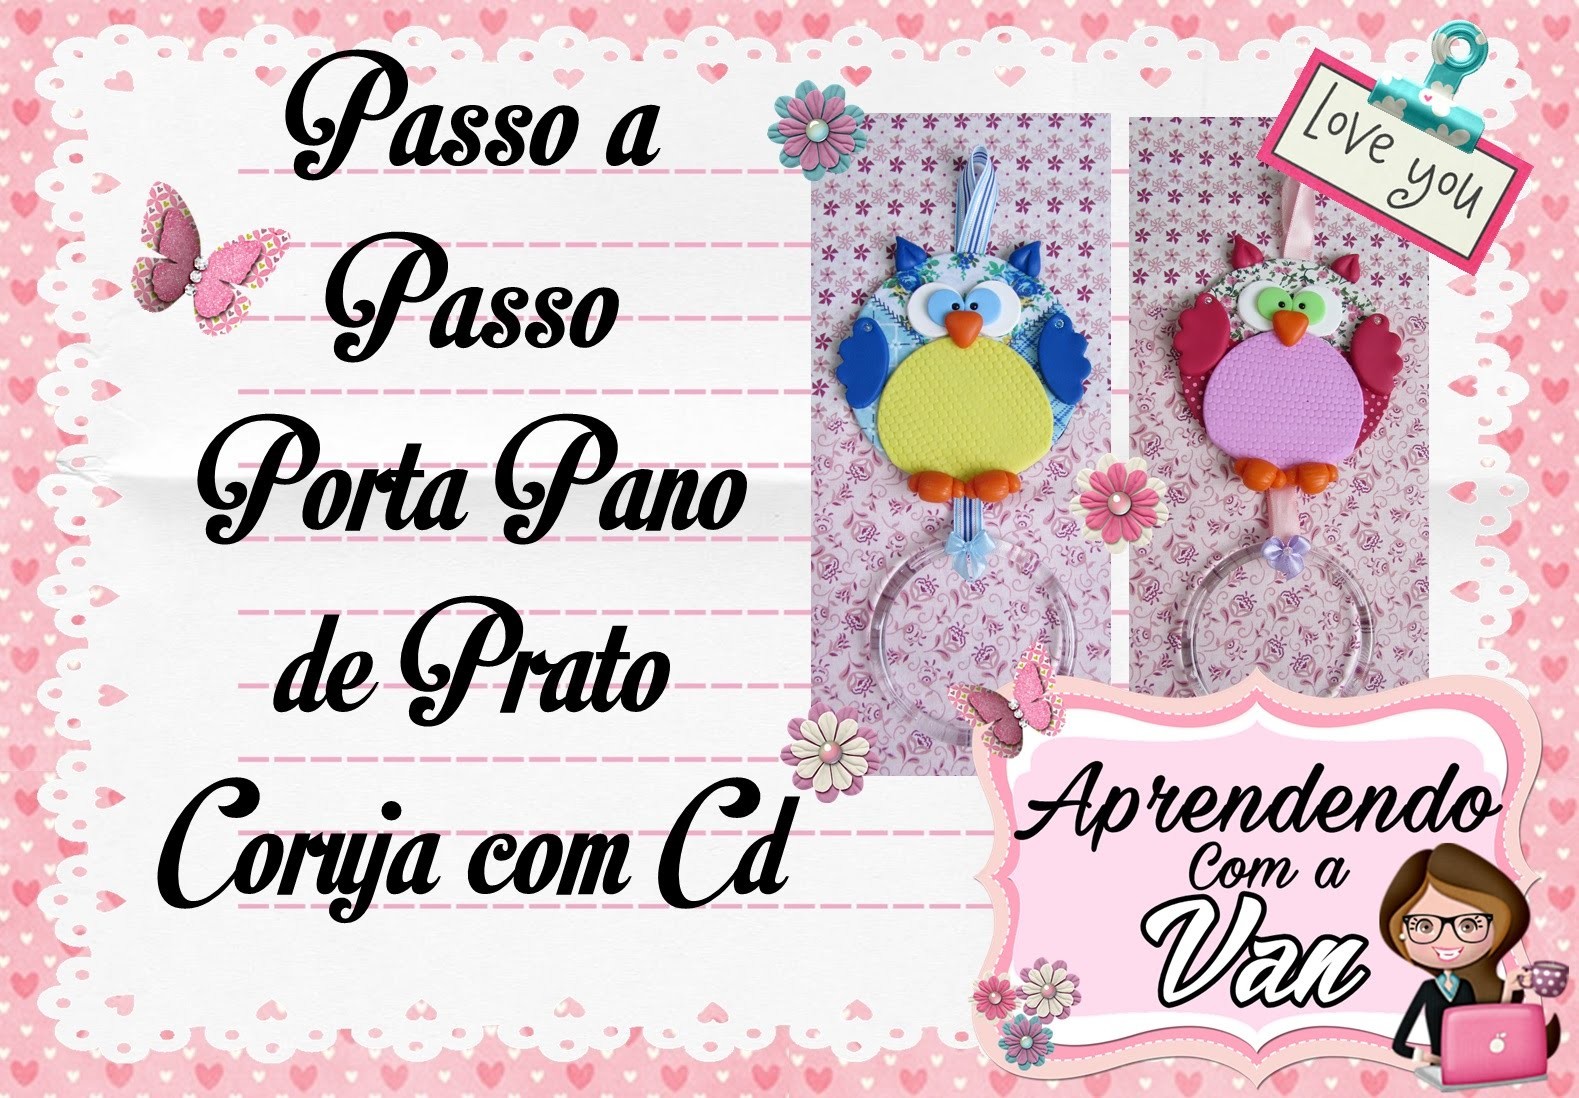 (DIY) PASSO A PASSO PORTA PANO DE PRATO CORUJA COM CD - Especial Dia das Mães #14